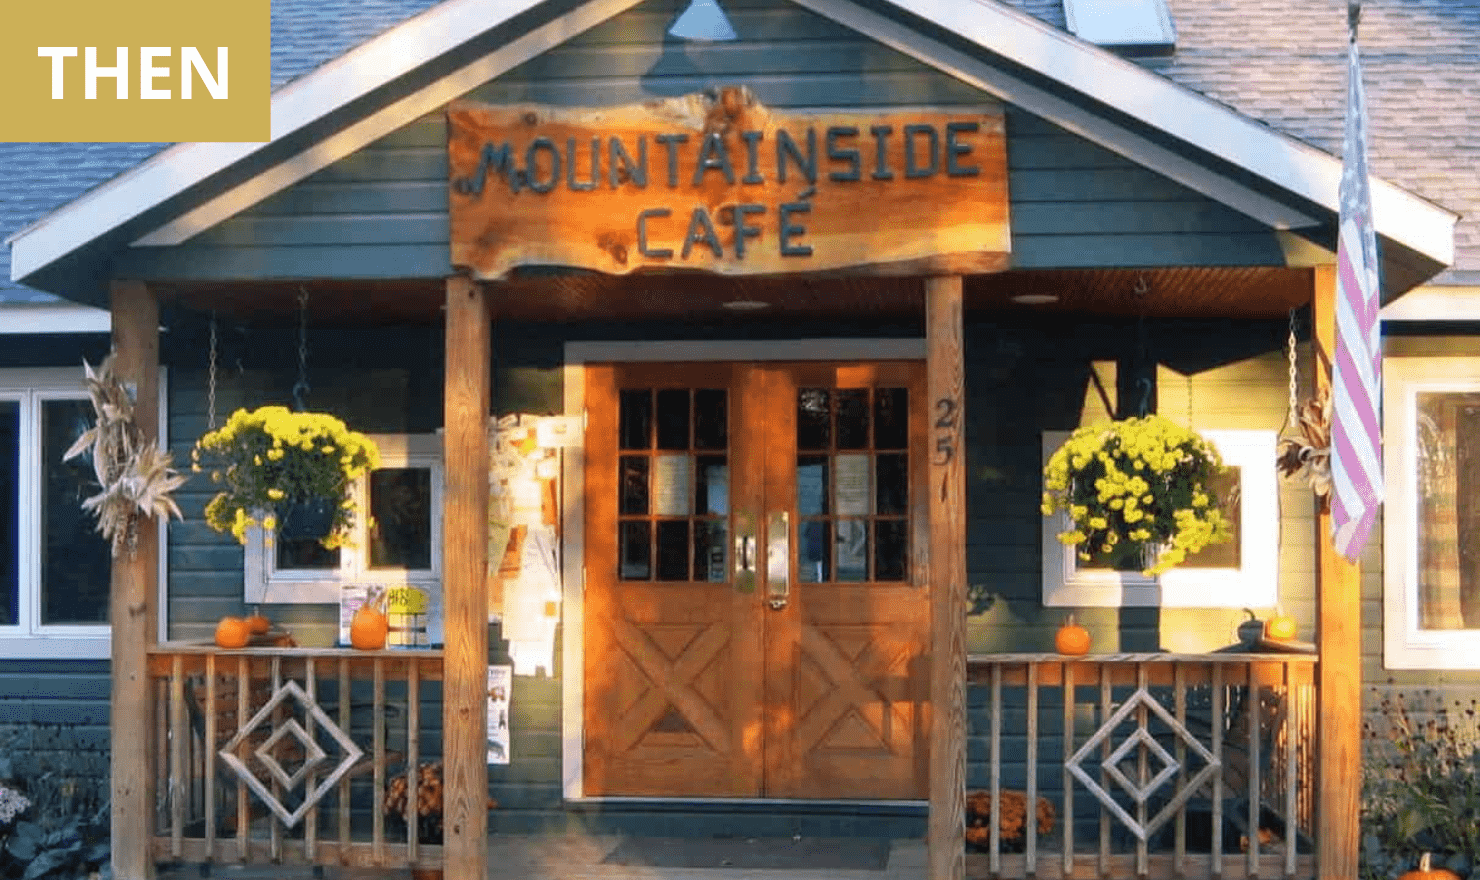 THEN: Mountainside Café